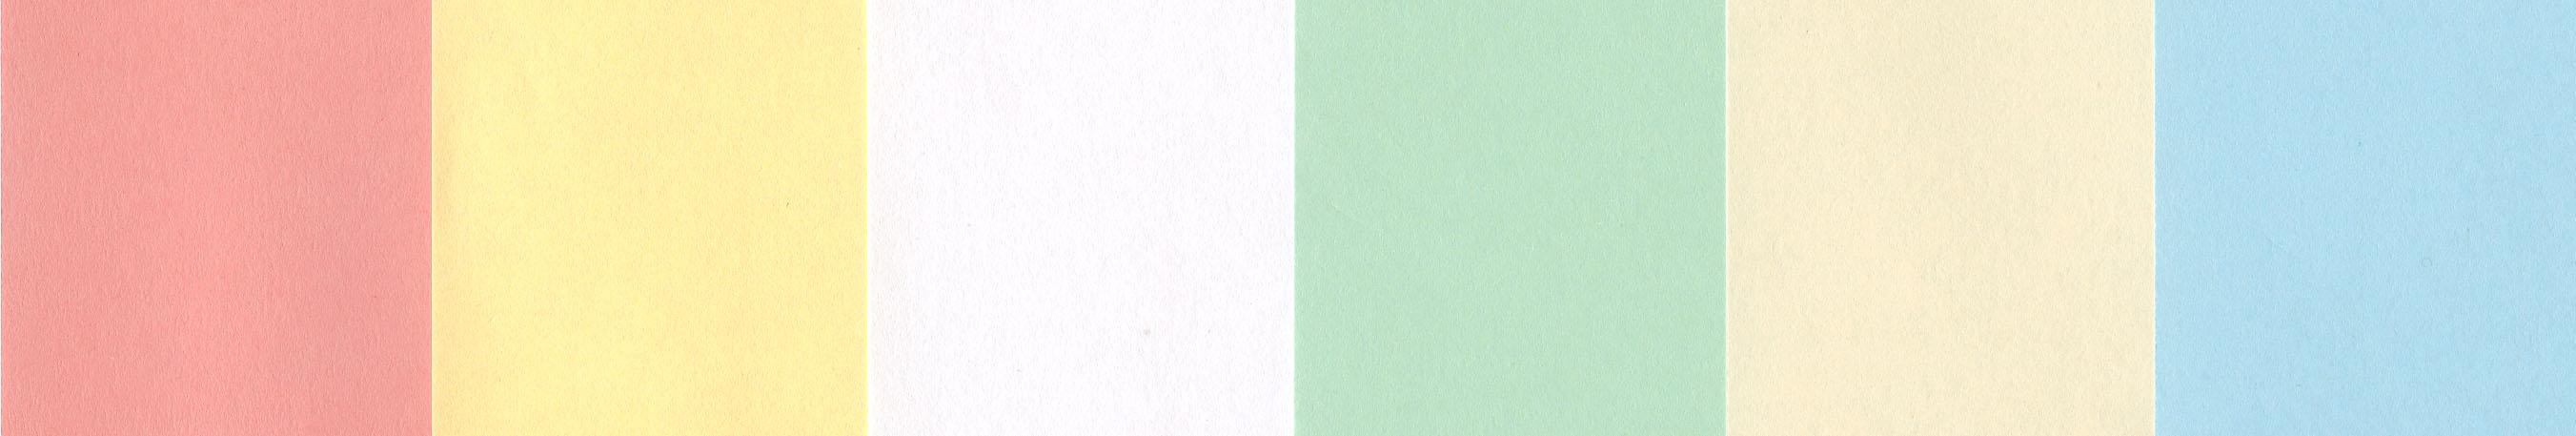 Copier Paper Color Choices